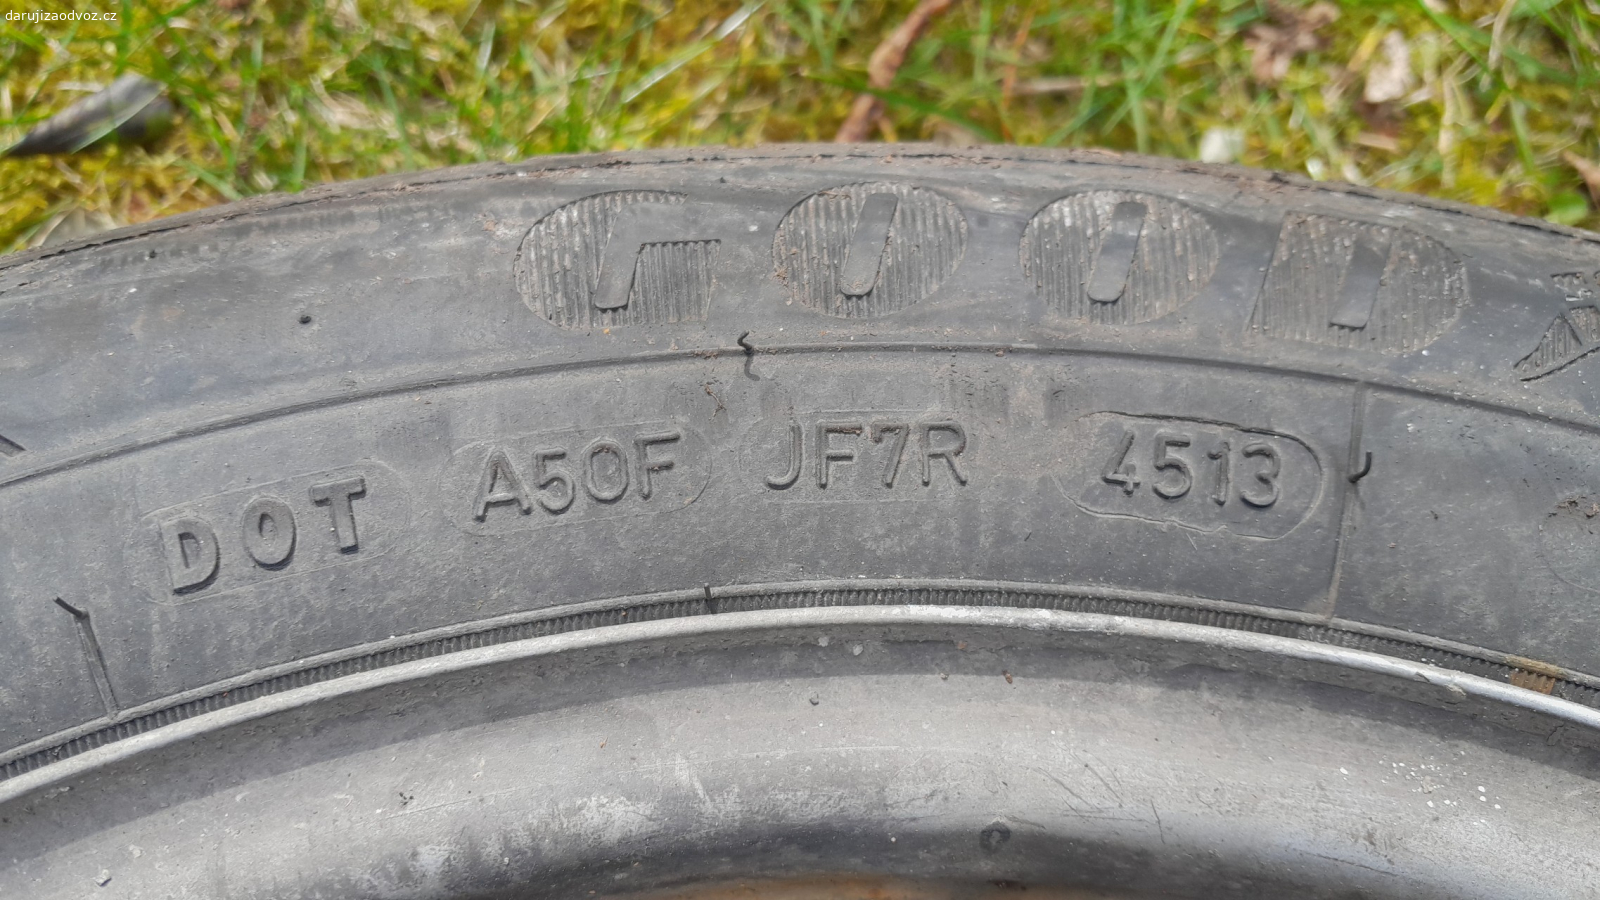 disky a pneu 205/55R16 91V. staré pneu s diskama  sundane před lety z Ford mondeo